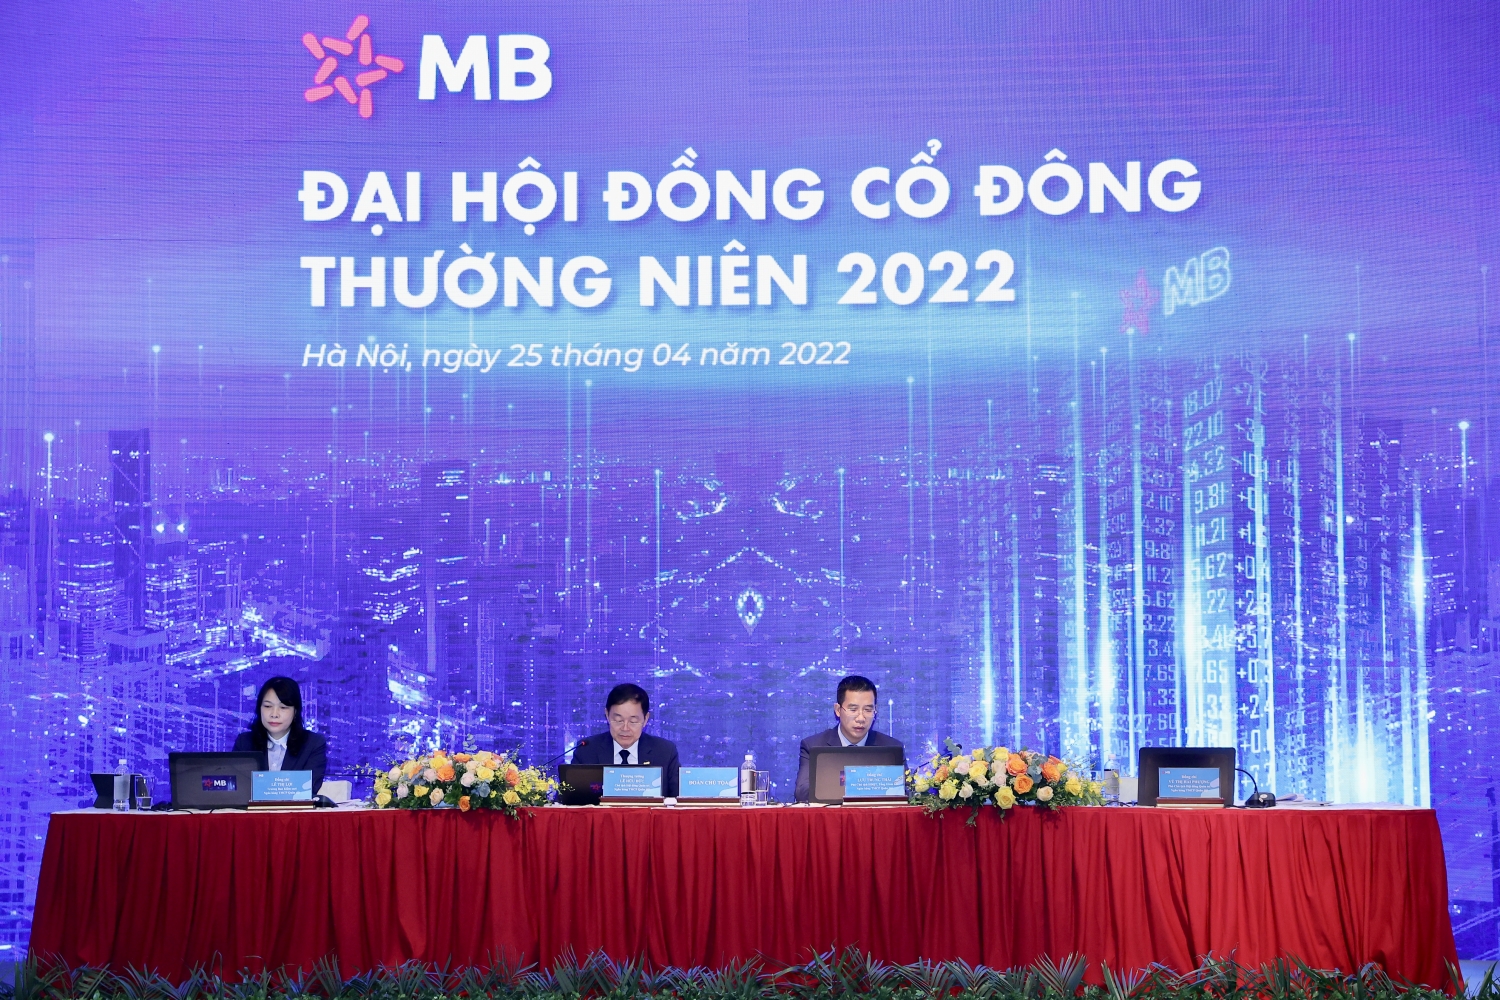 Năm 2022, MB xác định tầm nhìn “Trở thành Doanh nghiệp số, Tập đoàn tài chính dẫn đầu”